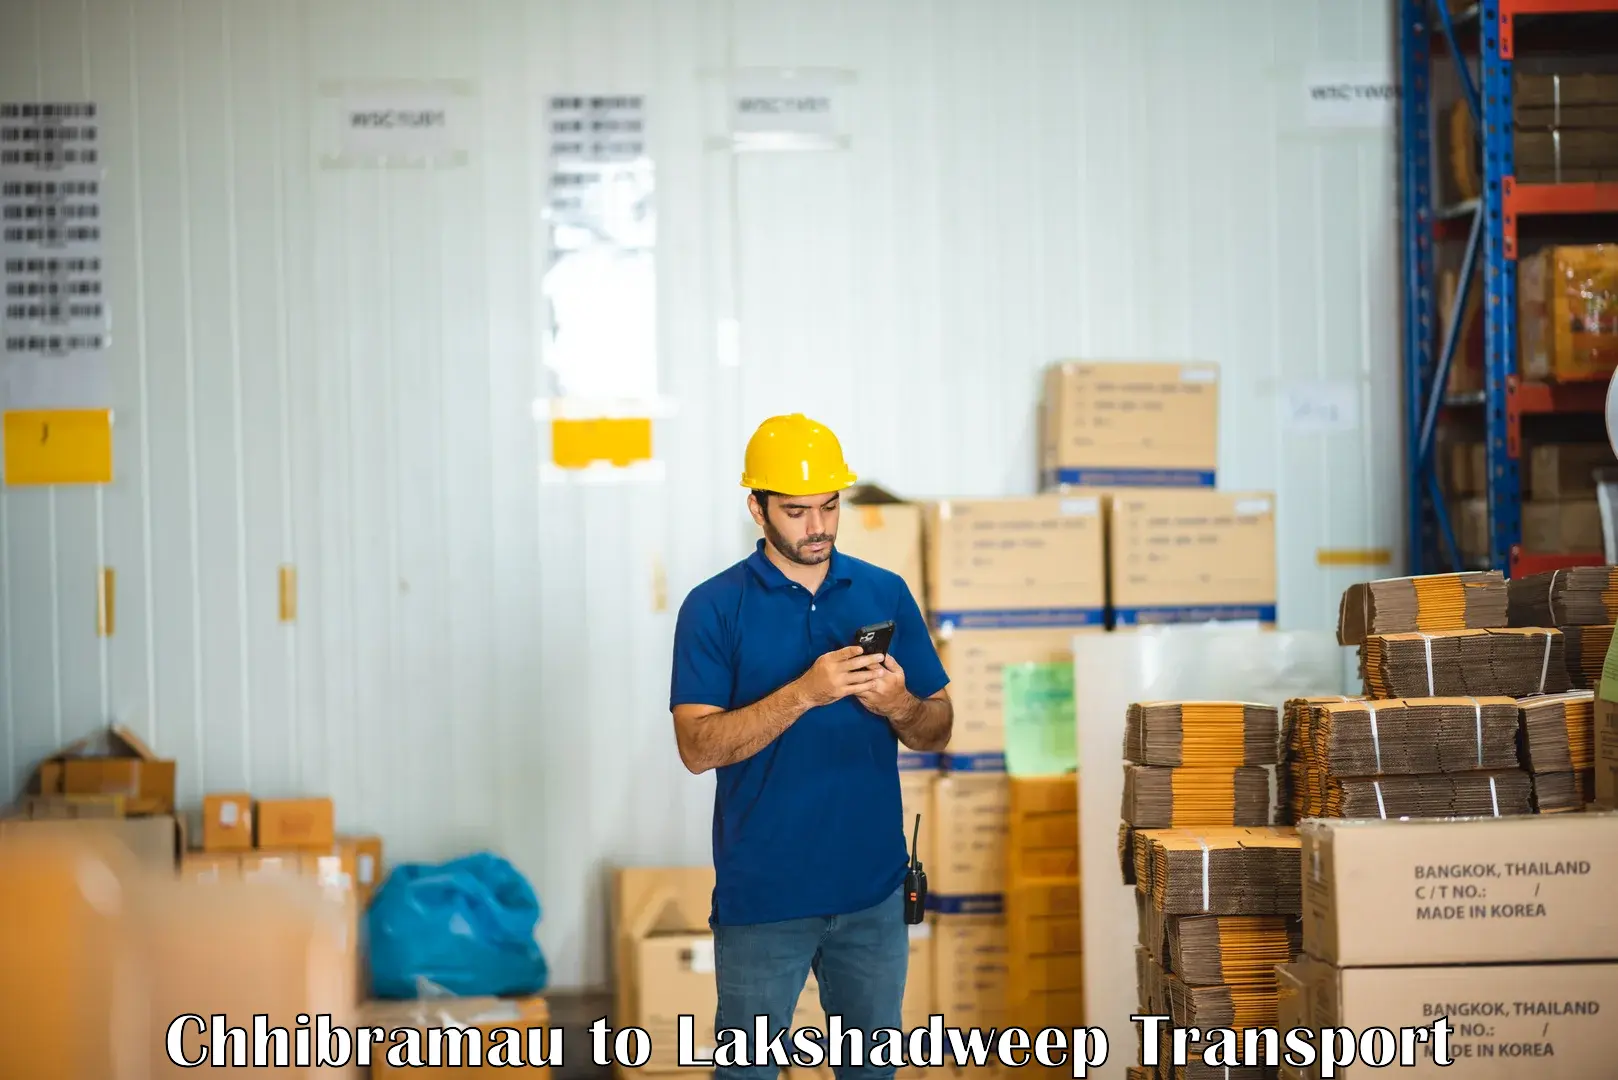 International cargo transportation services Chhibramau to Lakshadweep